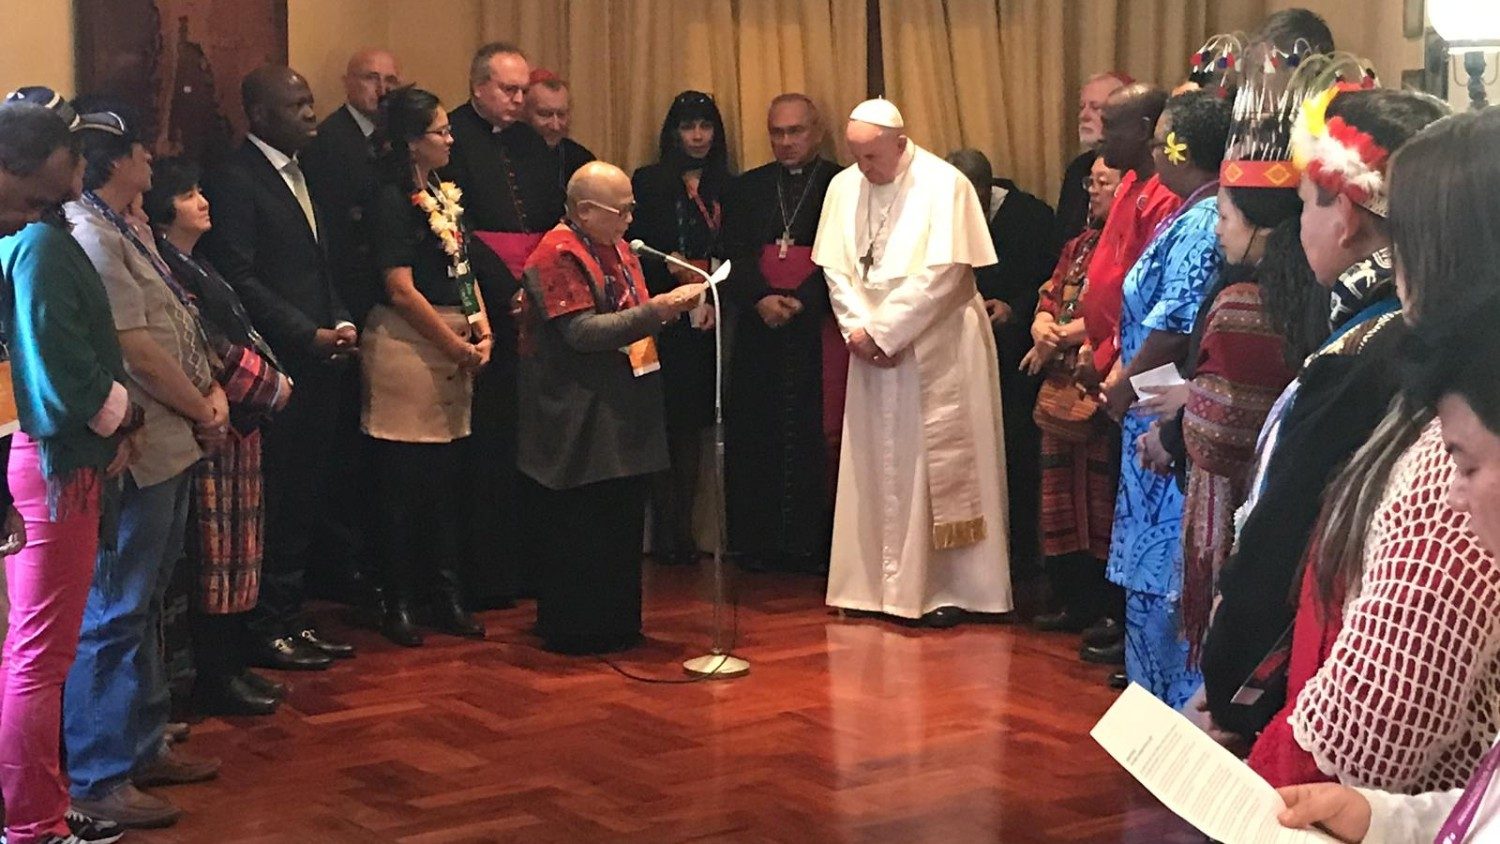 Папа встретился с представителями коренных народов